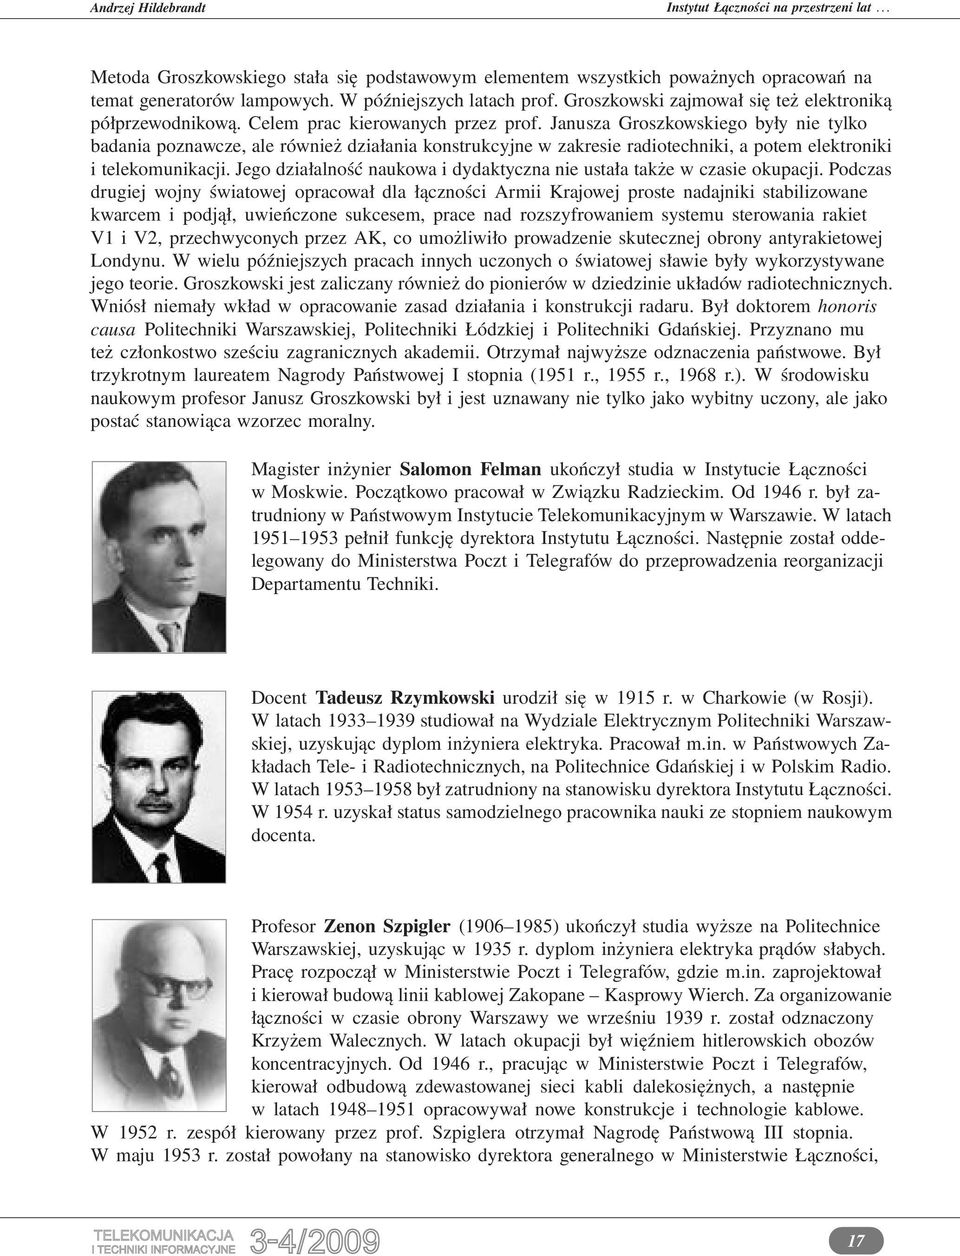 Janusza Groszkowskiego były nie tylko badania poznawcze, ale również działania konstrukcyjne w zakresie radiotechniki, a potem elektroniki i telekomunikacji.